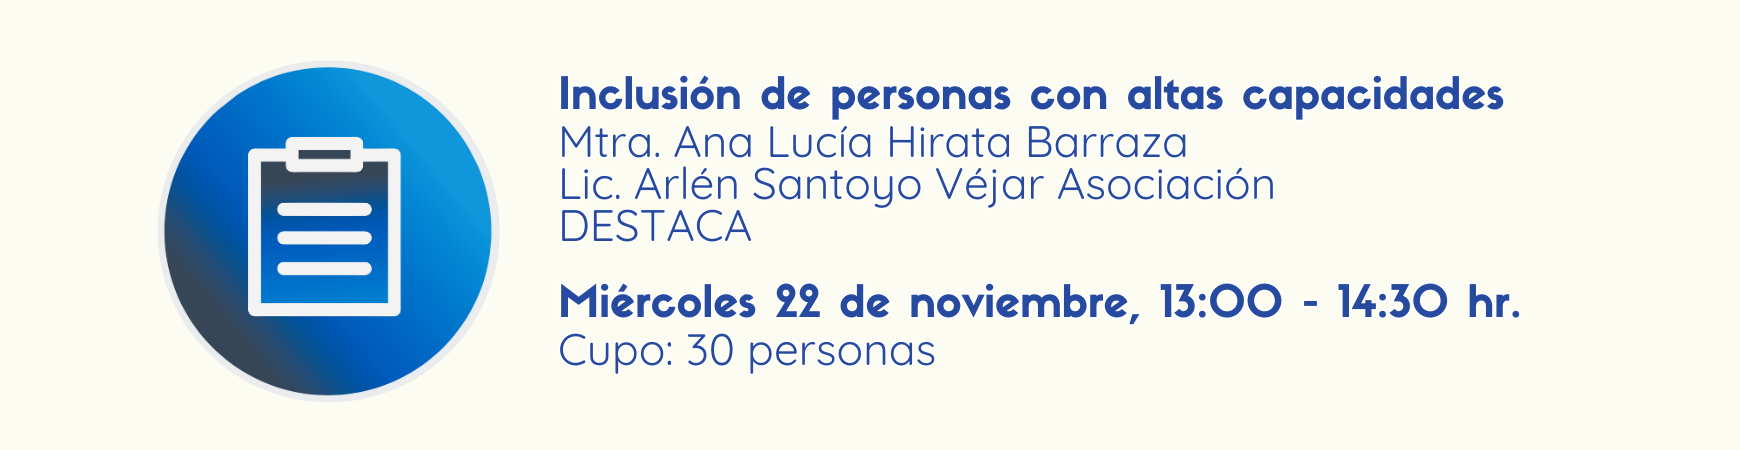 Imagen para registros al taller: Inclusión de personas con altas capacidades, miércoles 22 de noviembre de 1:00 a 2:30pm